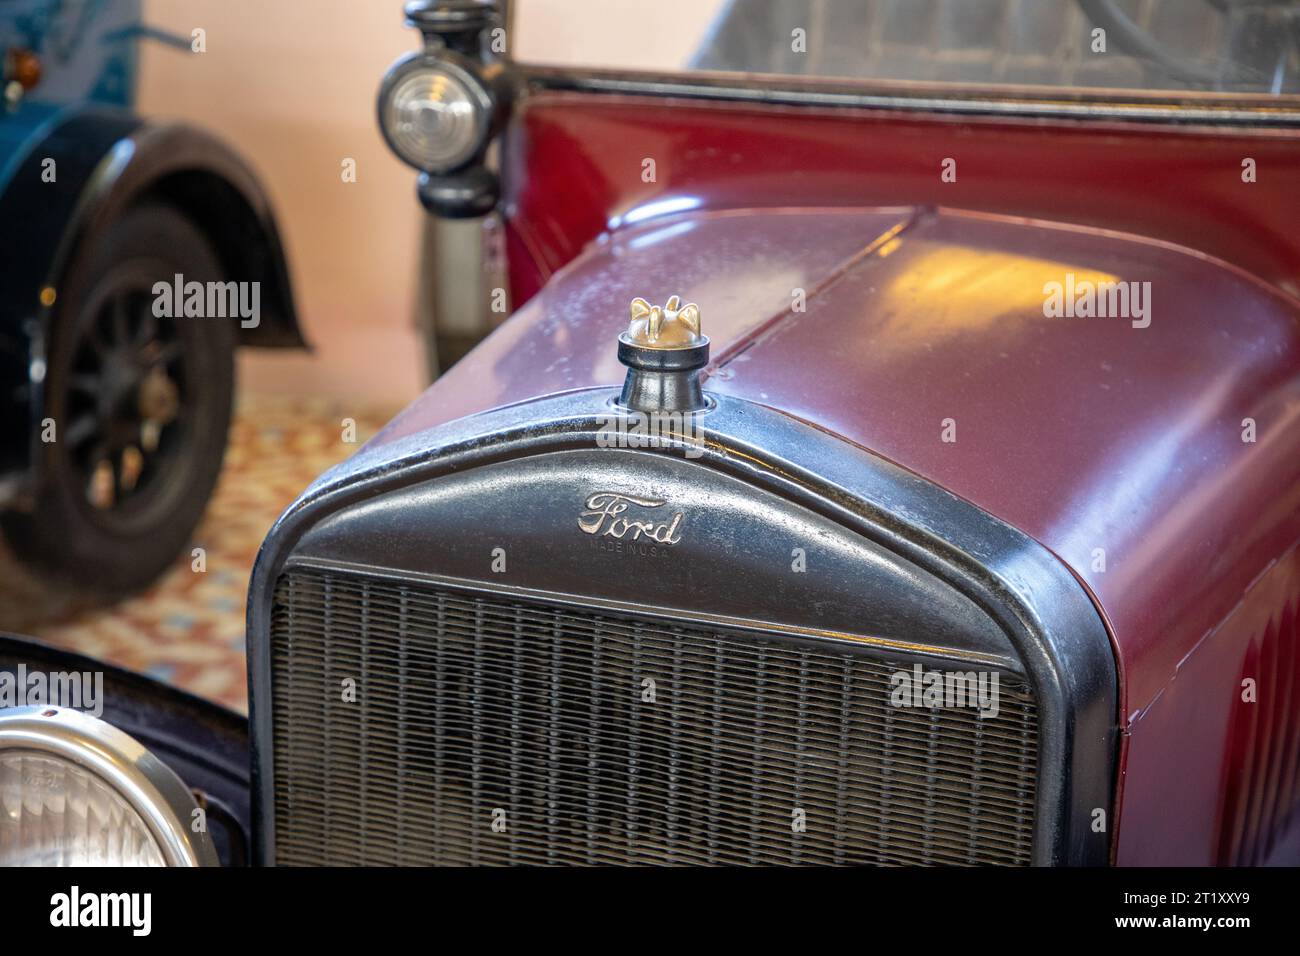 Talmont , France - 10 09 2023 : ford signe de texte et logo marque de voiture vintage classique sur radiateur en cuivre de grille Banque D'Images